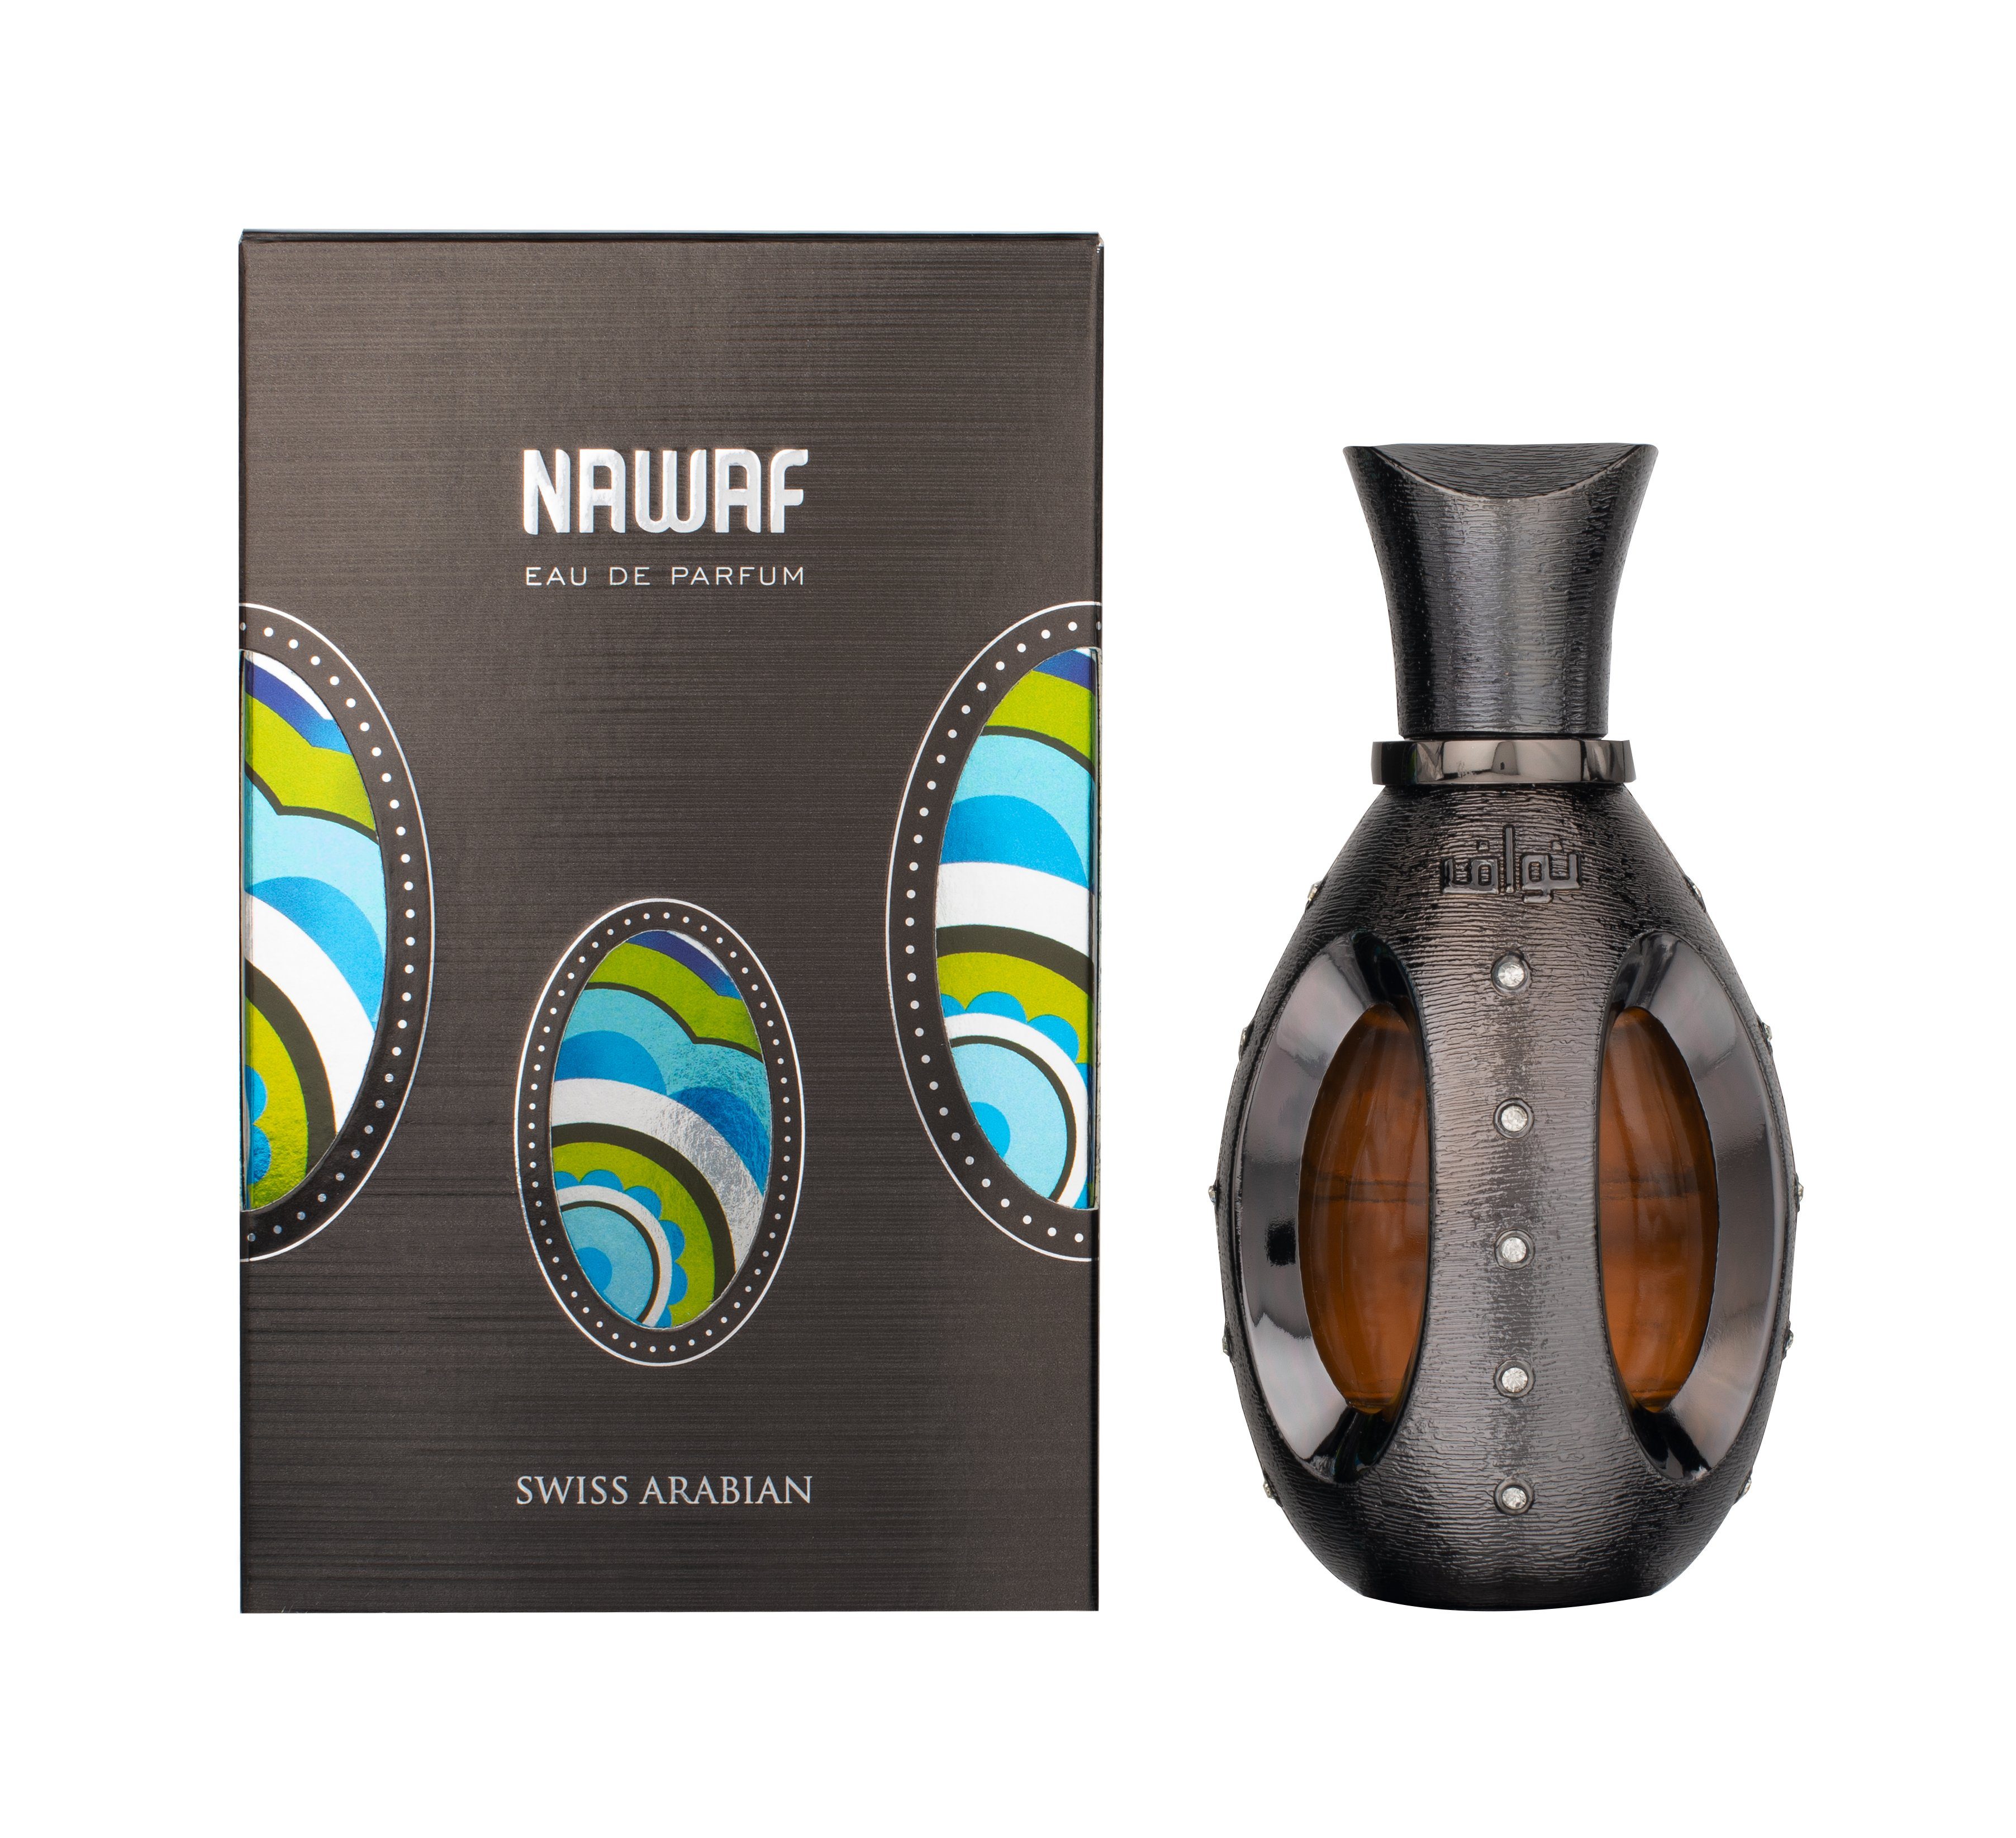 Swiss Arabian Eau de Parfum Swiss Arabian Eau de Parfum Nawaf 50ml Men | Eau de Parfum